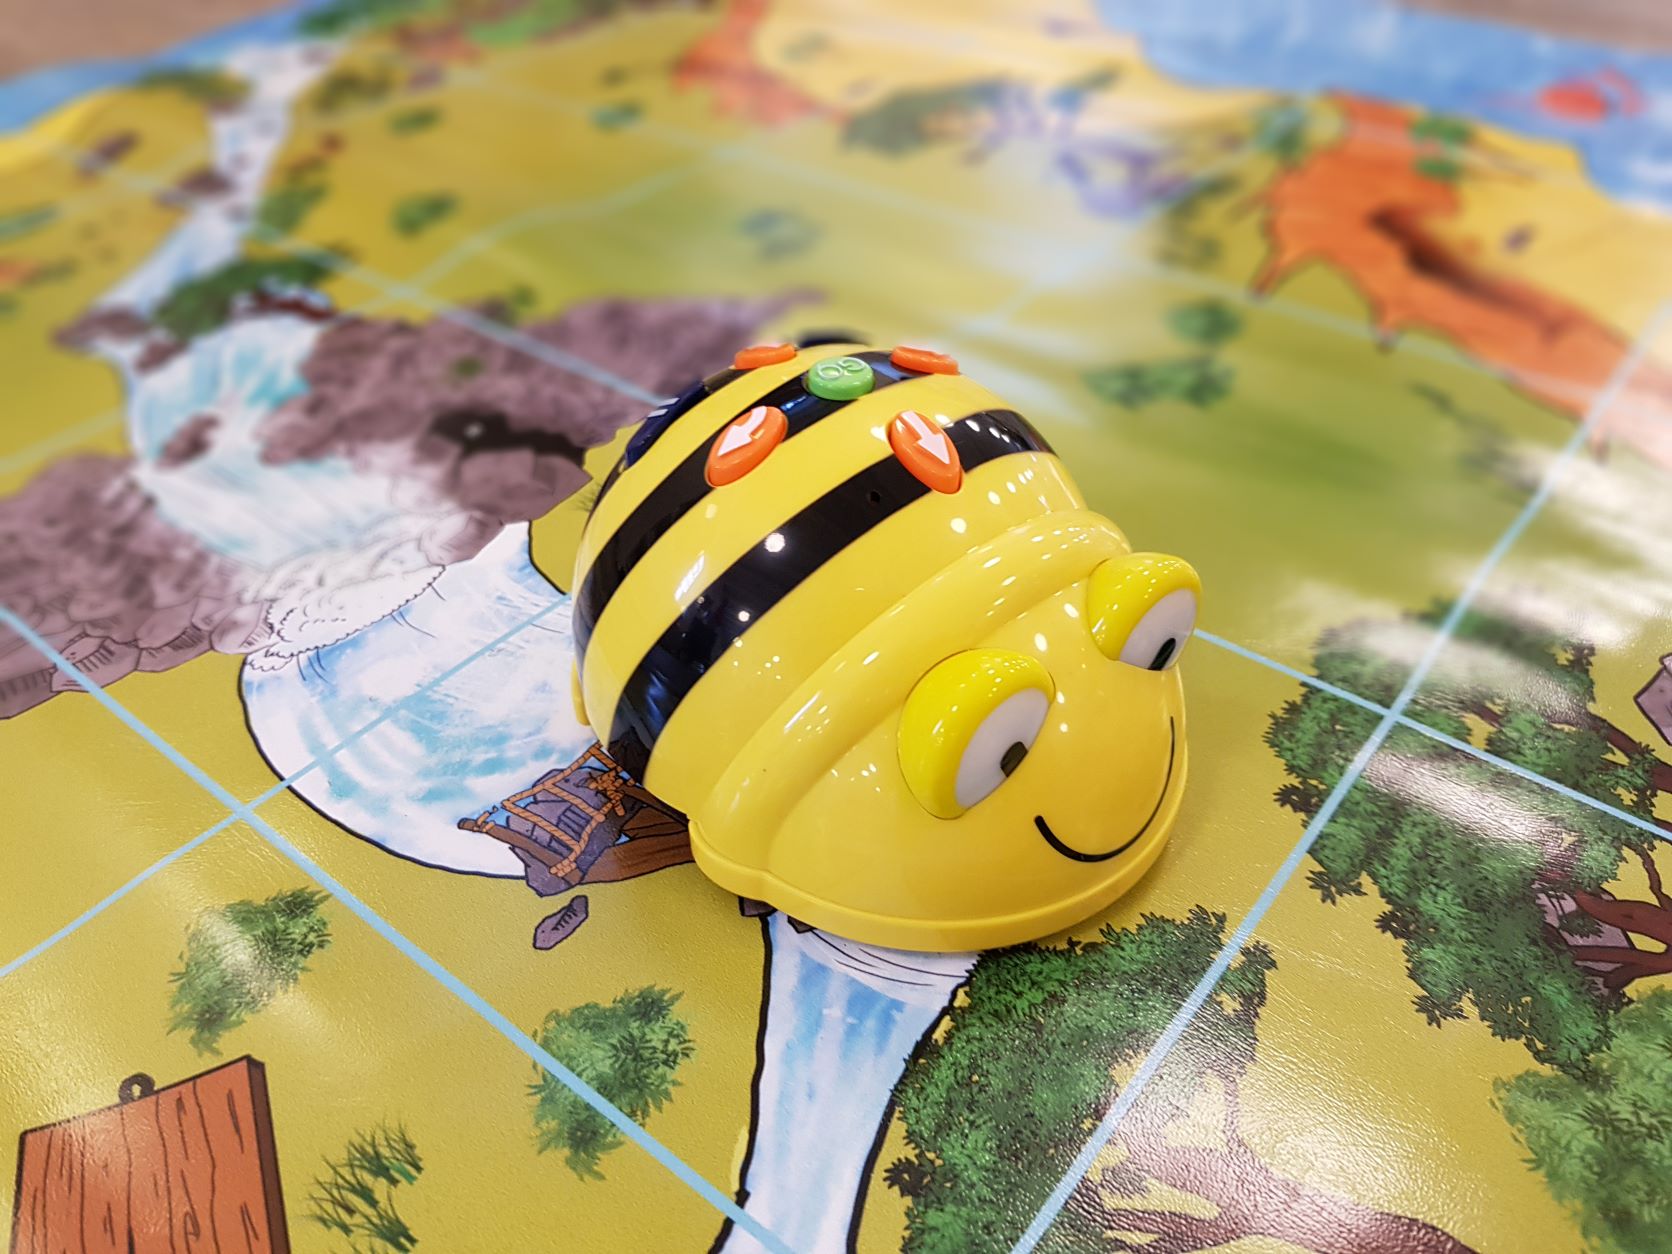 BeeBots - spielerische Einblicke in elementare Robotik in der Stadtbücherei Rendsburg.